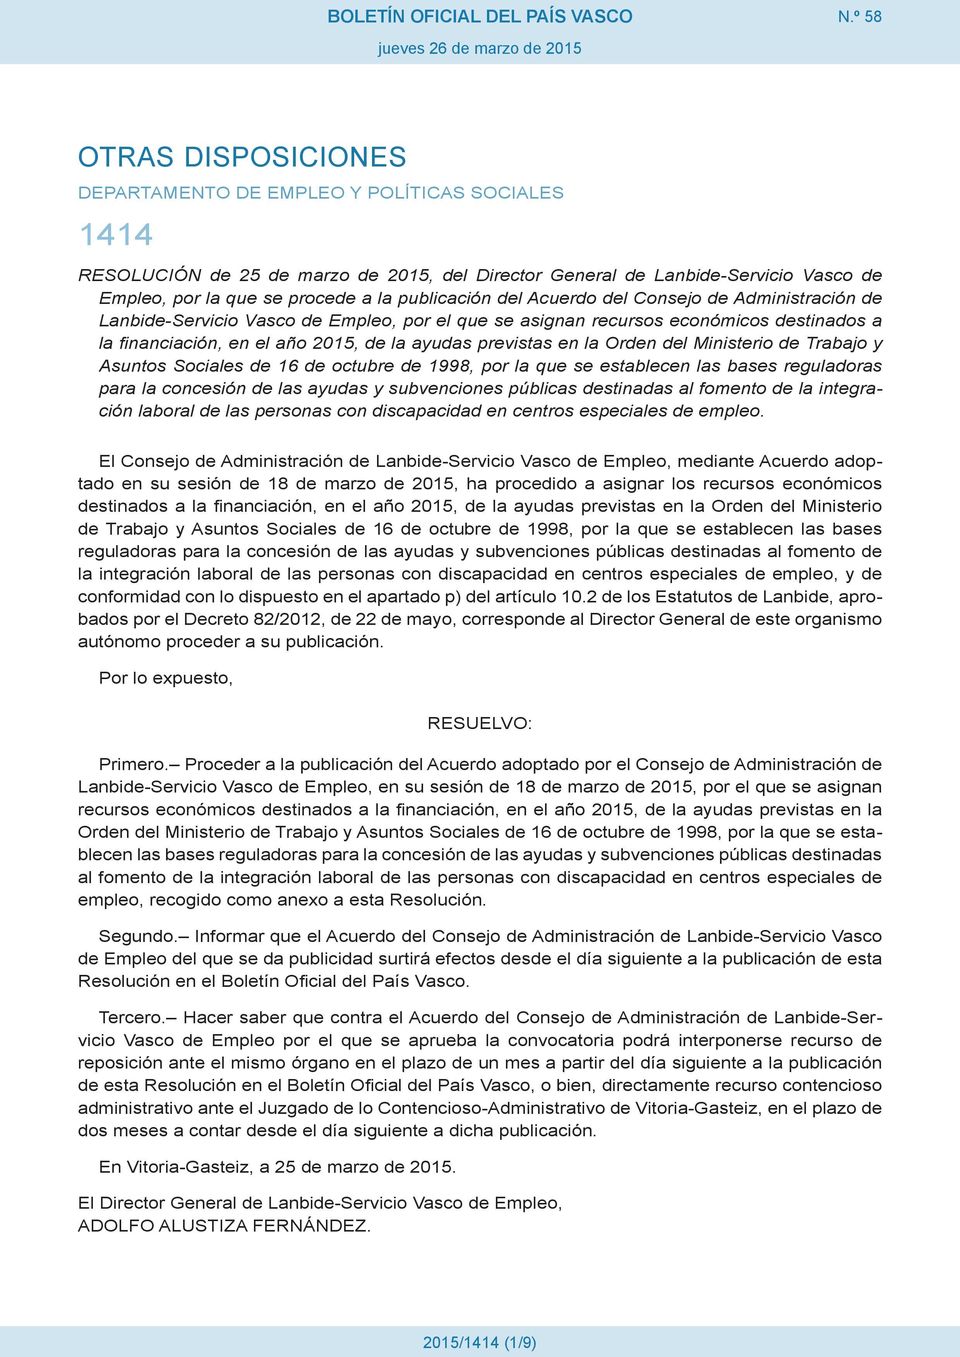 publicación del Acuerdo del Consejo de Administración de Lanbide-Servicio Vasco de Empleo, por el que se asignan recursos económicos destinados a la financiación, en el año 2015, de la ayudas